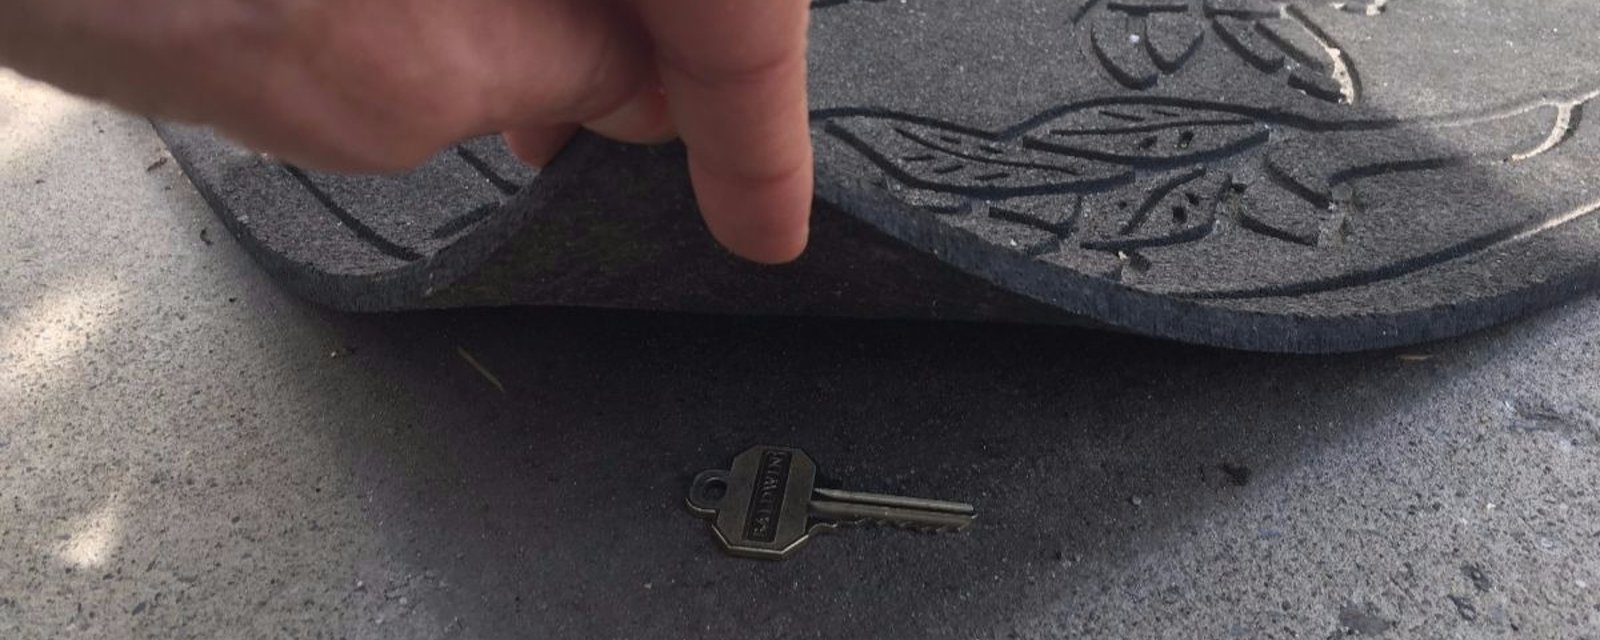 Découvrez où on peut cacher un double de clé de la maison!